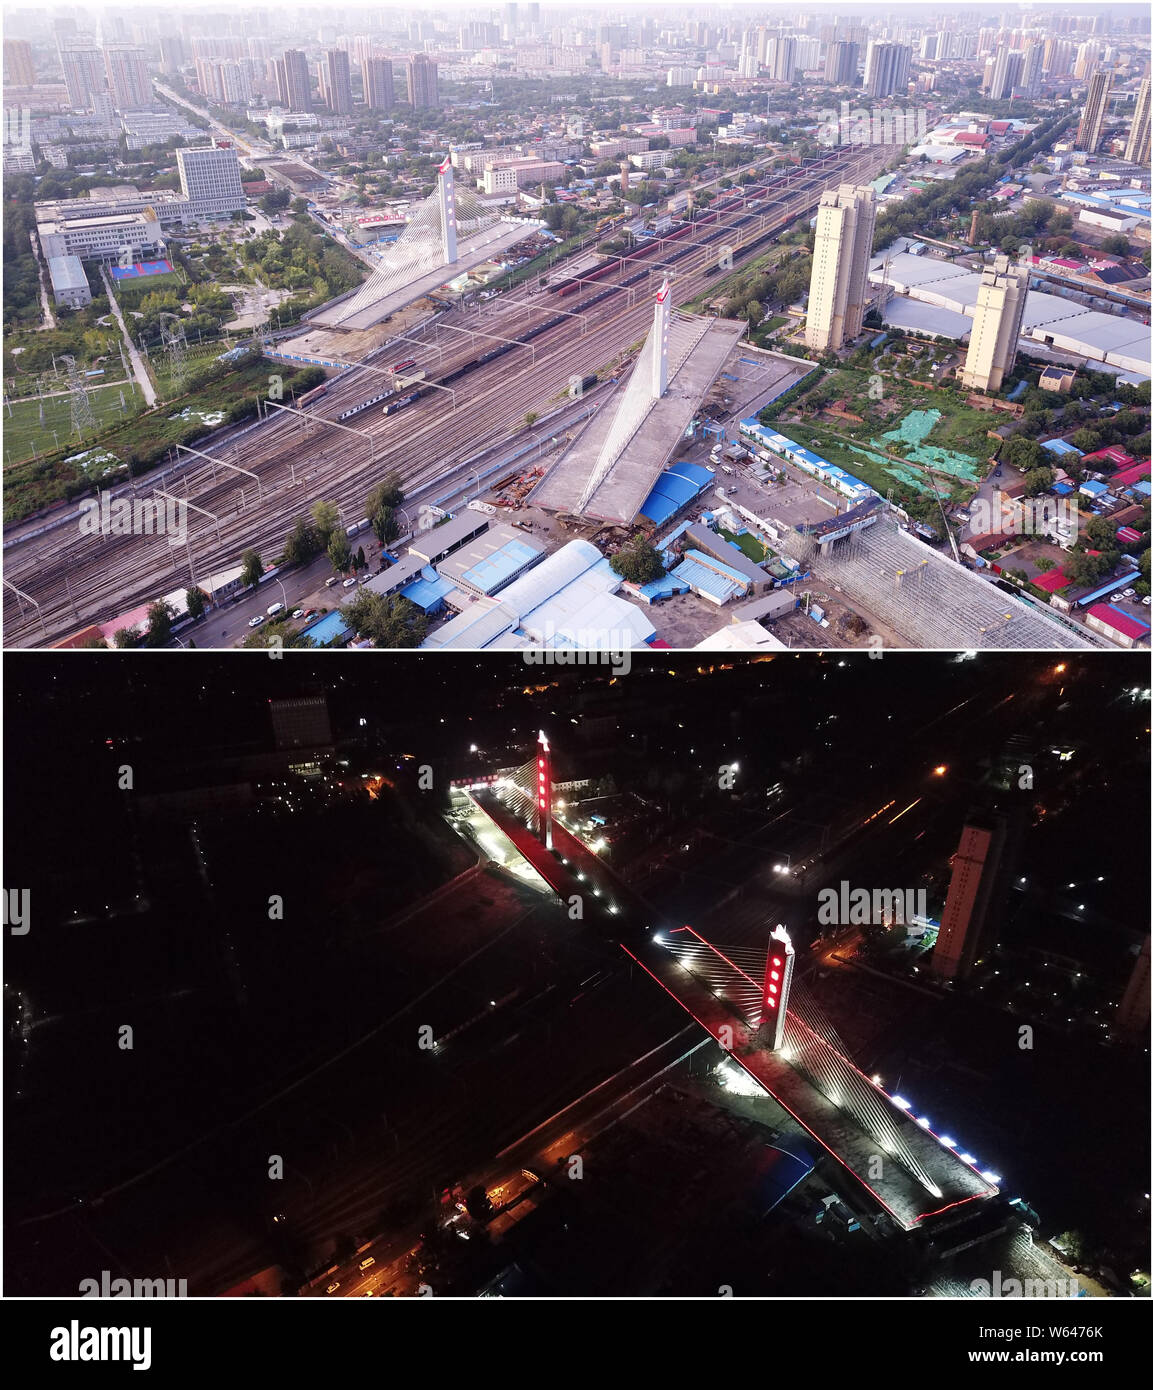 (190731) -- PECHINO, luglio 31, 2019 (Xinhua) -- Questo combo mostra fotografica di due parti di un ponte al di sopra della ferrovia Beijing-Guangzhou prima (superiore, fotografia scattata a luglio 29, 2019) e dopo (fondo, fotografia scattata a luglio 30, 2019) sono ruotate correttamente alle loro posizioni mirate utilizzando la costruzione dello snodo nel metodo di Baoding, nel nord della Cina di nella provincia di Hebei. La Cina ha adottato la struttura girevole metodo nella costruzione di molti ponti per ridurre al minimo le interferenze con il traffico sotto. Il metodo consente di superare i vincoli di ambiente e traffico, mentre un accorciamento del periodo di costruzione. (Xinhu Foto Stock